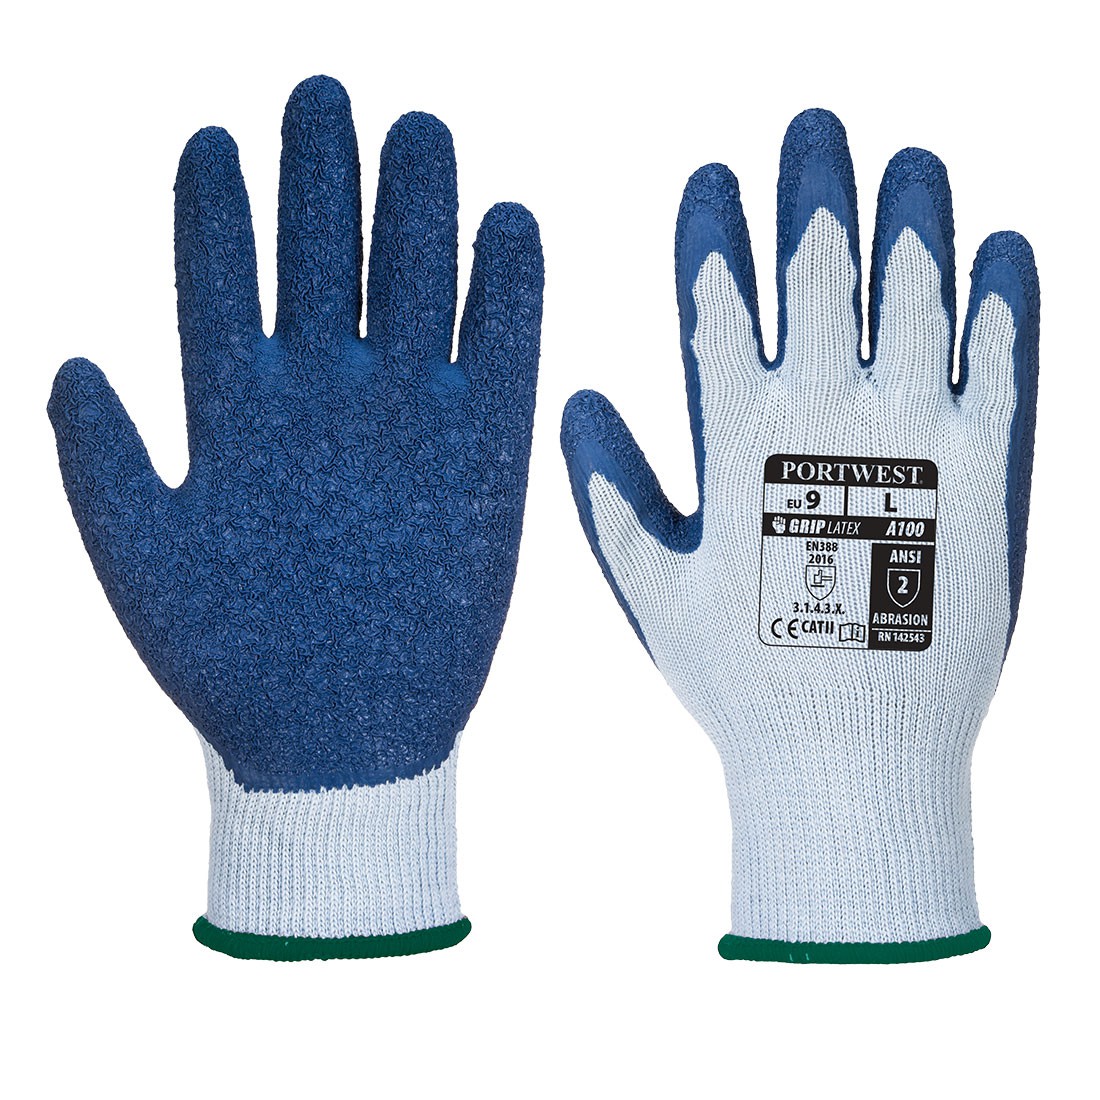 Los mejores guantes de trabajo impermeables y resistentes